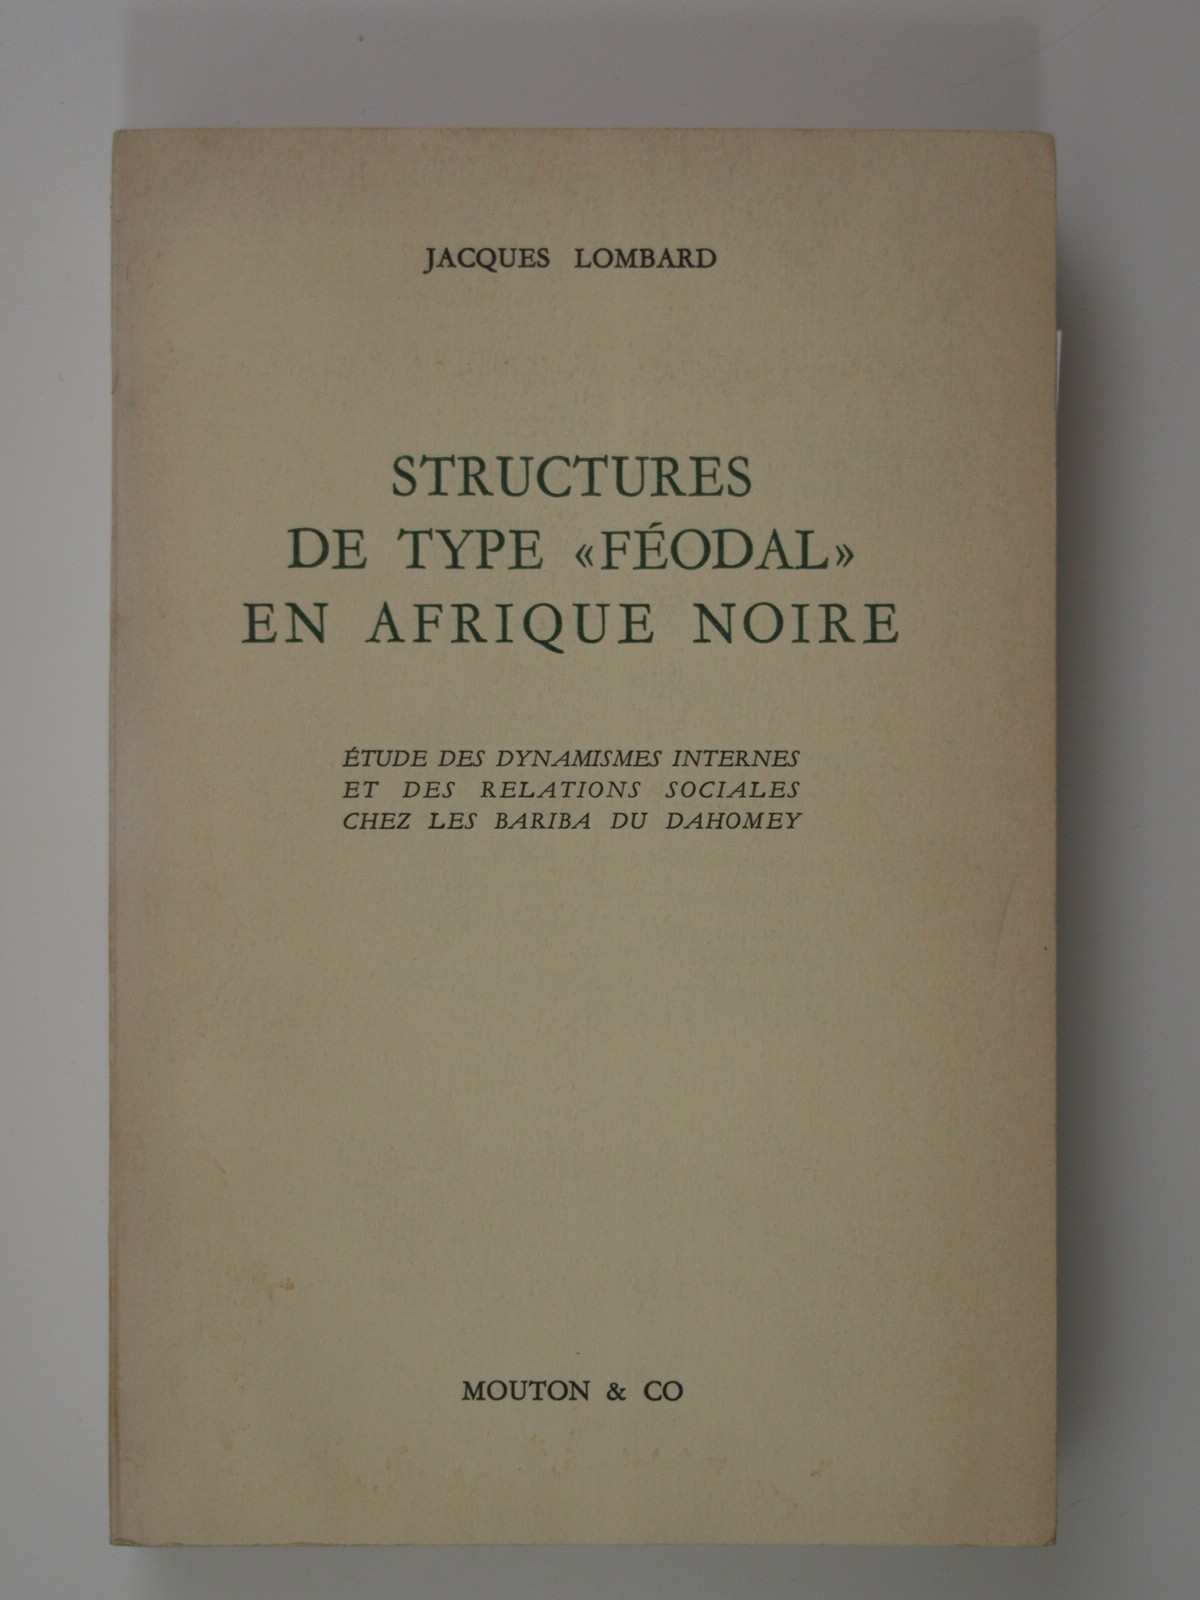 Lombard Jacques : Structures de type "feodal" en Afrique noire.